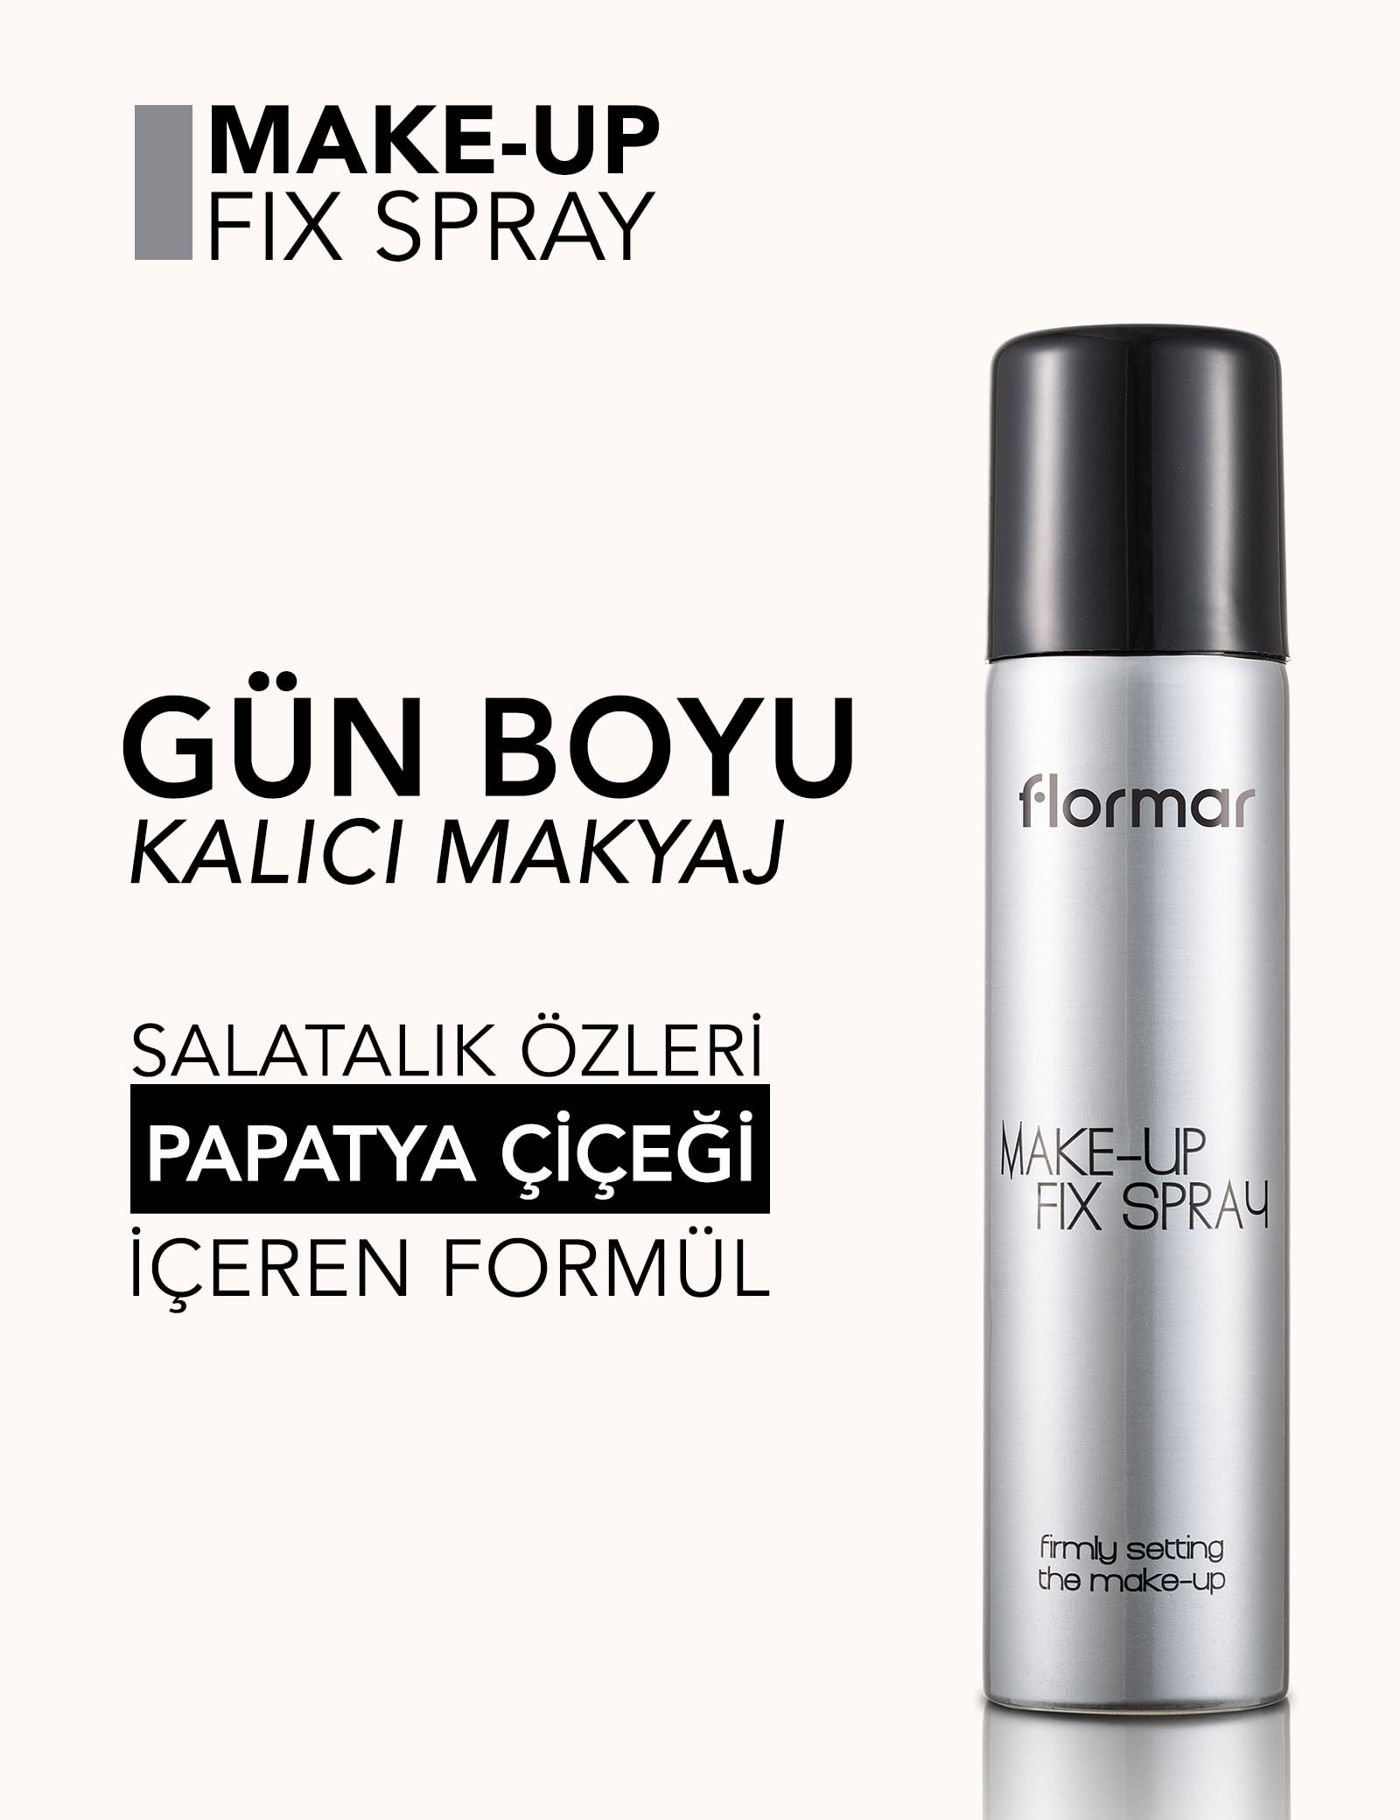 Flormar Ferahlatıcı ve Nemlendirici Makyaj Sabitleme Spreyi - Make-Up Fix Spray kapak resmi